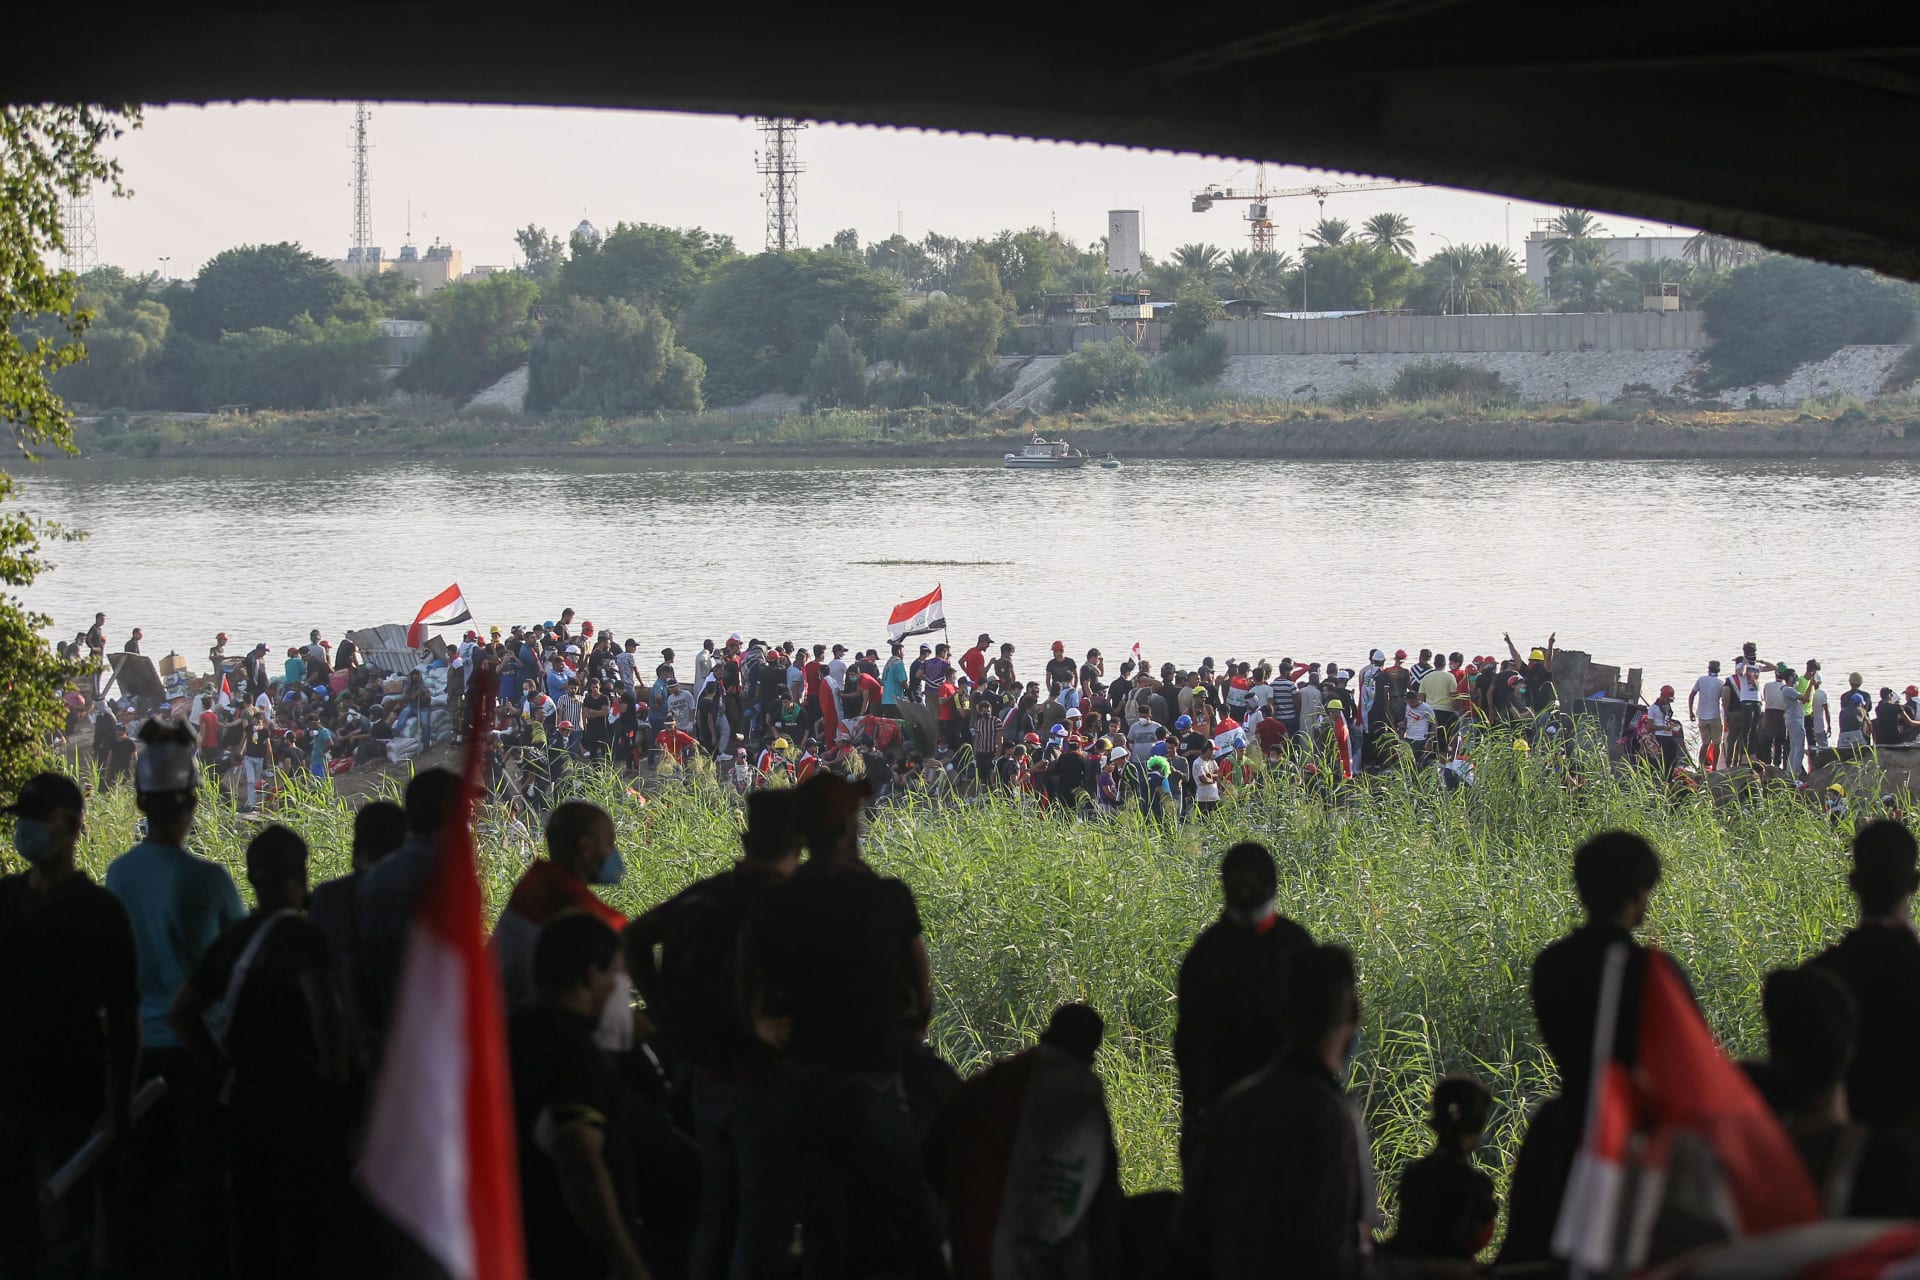 اشتباكات عنيفة بين الأمن ومتظاهرين على جسر بالعراق.. وأنباء عن سقوط قتلى ومصابين